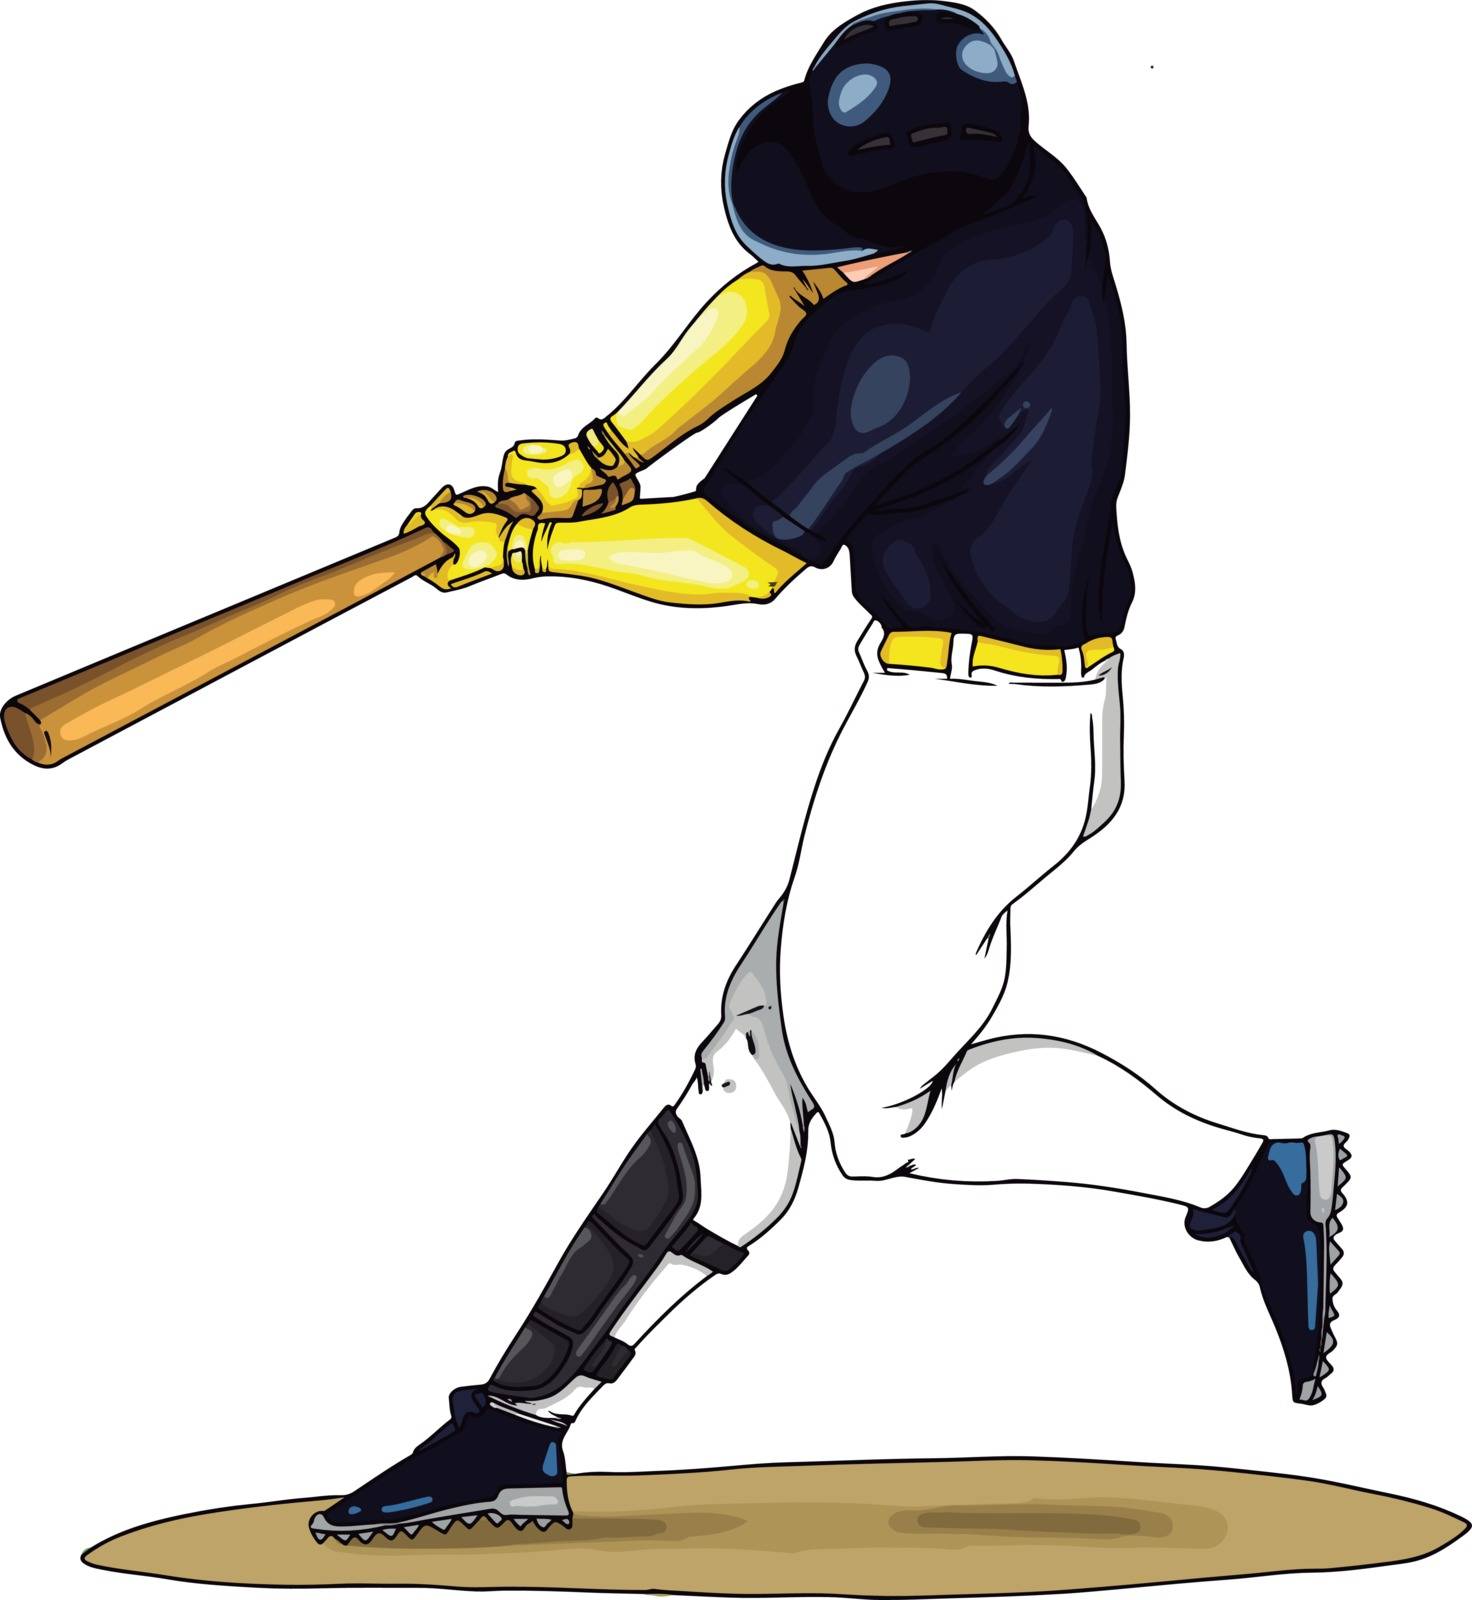 Baseball player swings the bat, illustration, vector on white background.